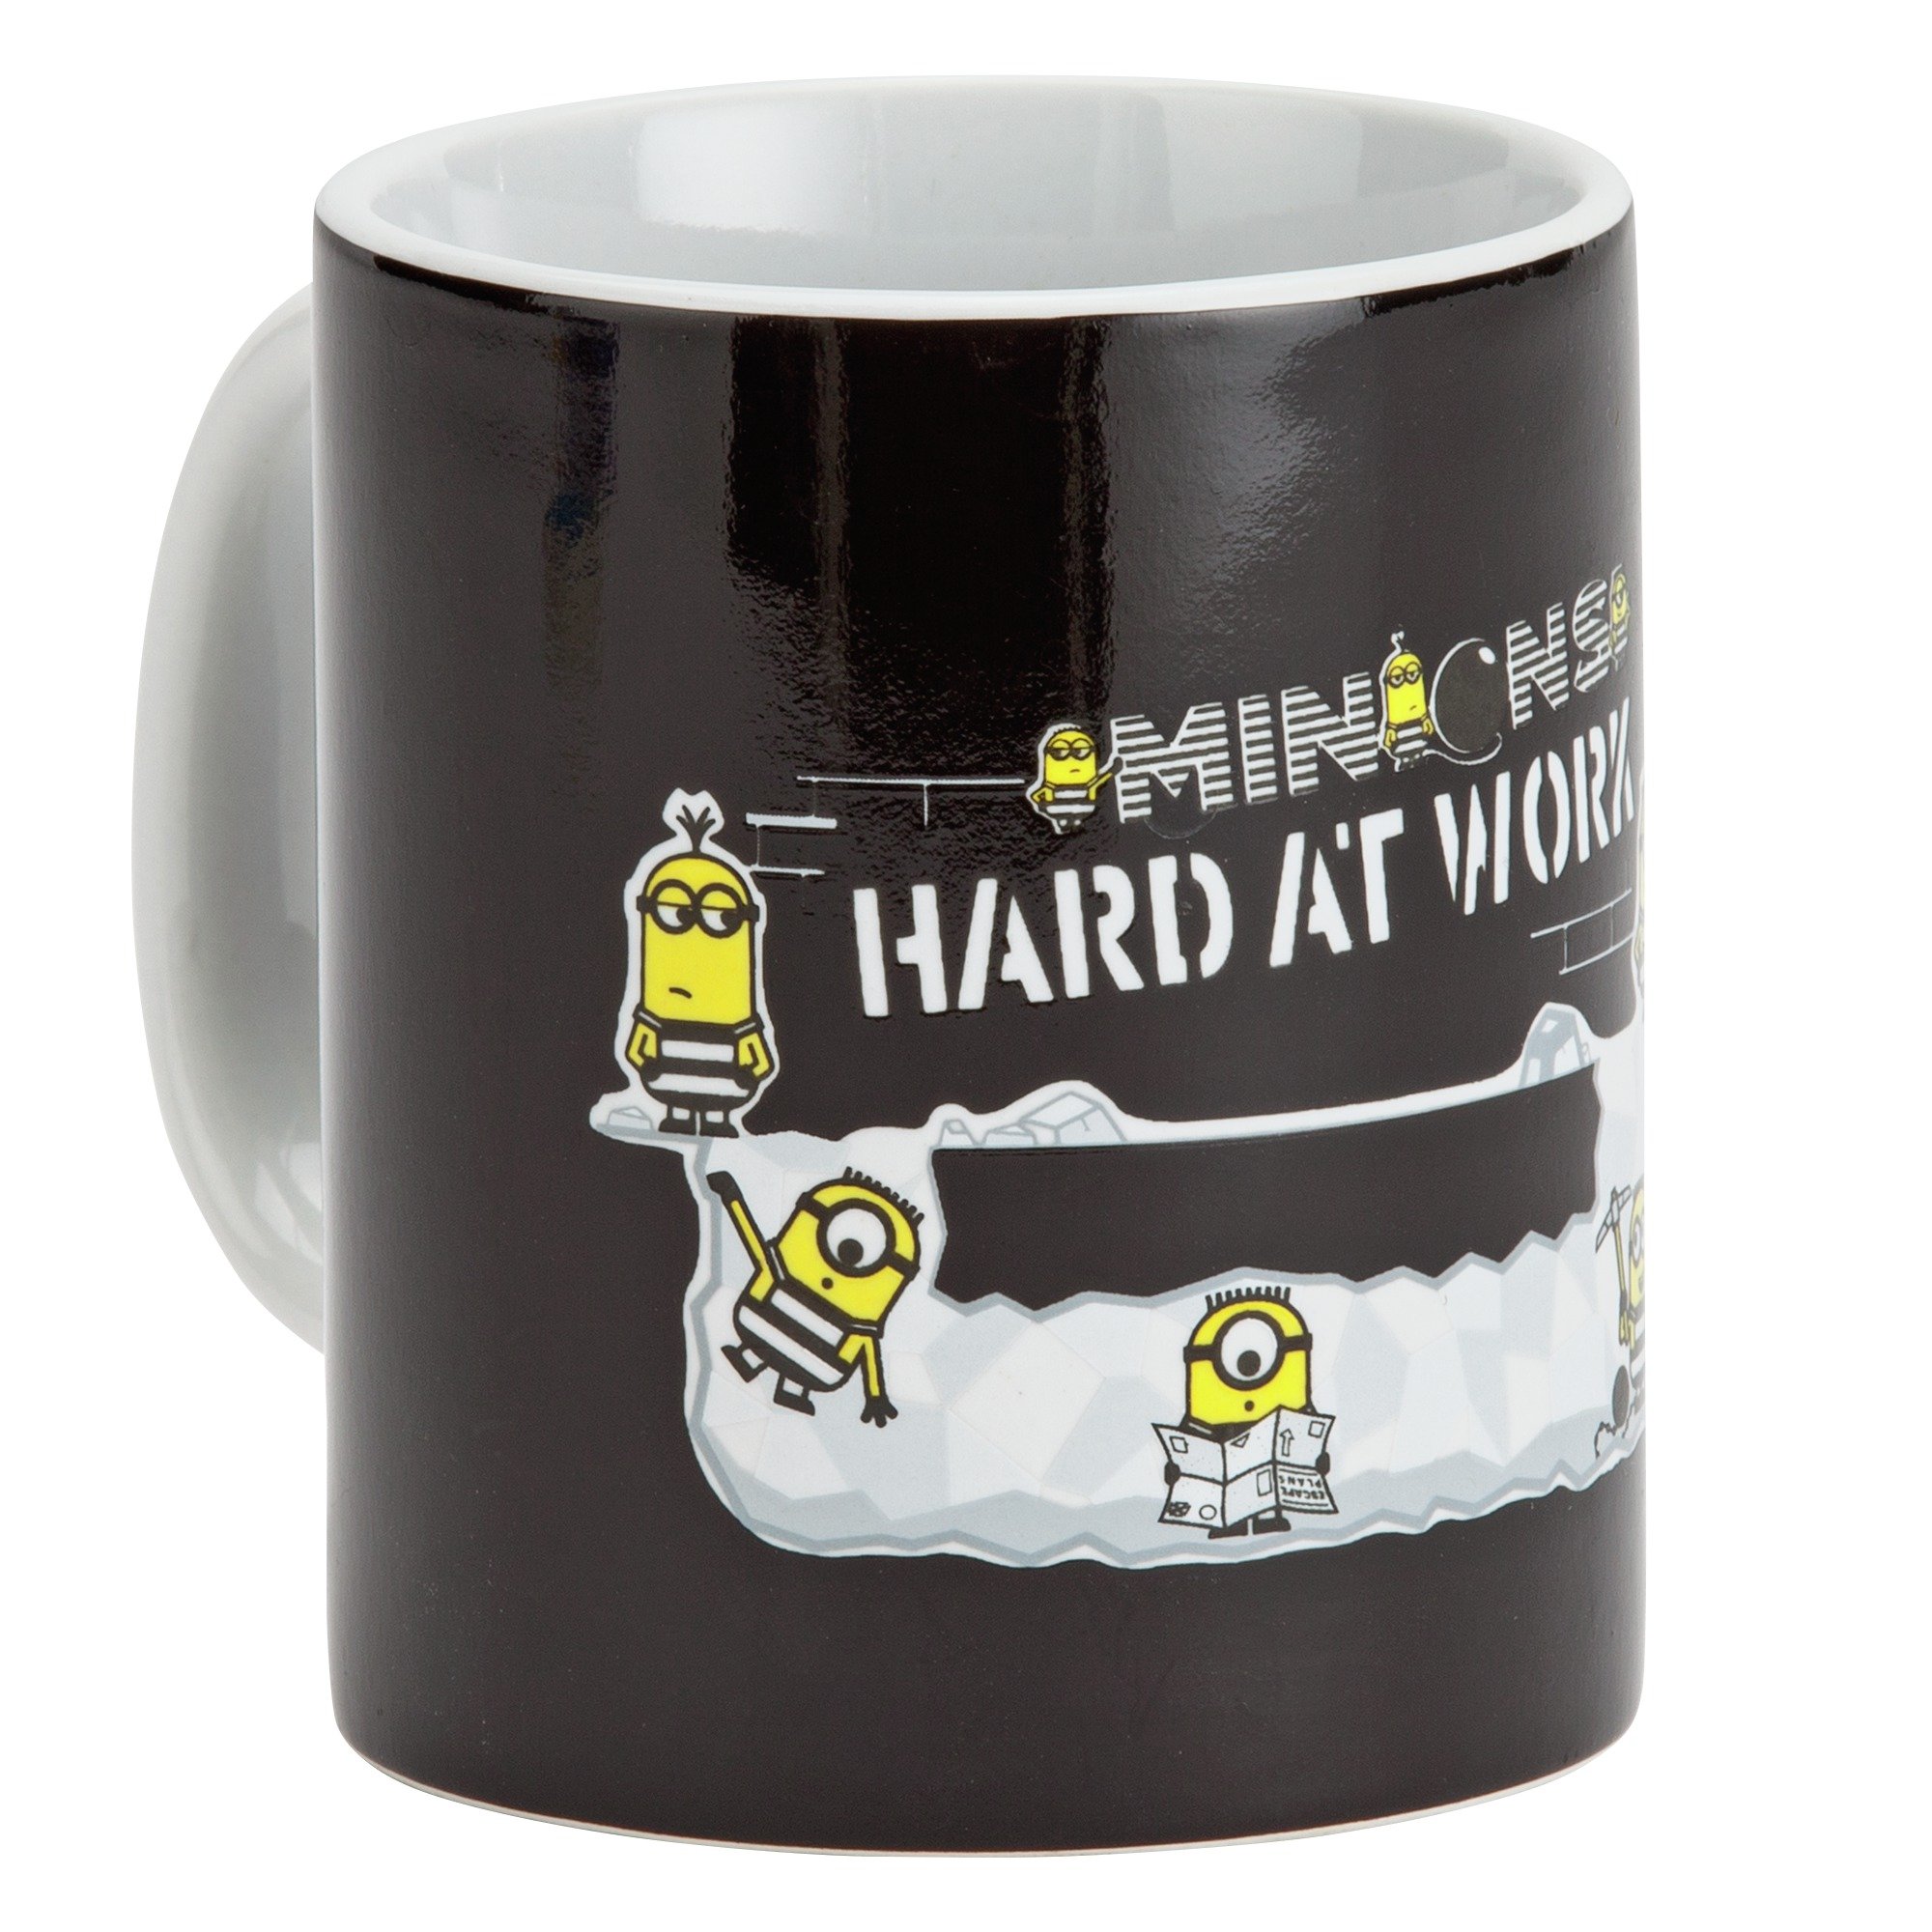 Minion Heat Revealing Mug.